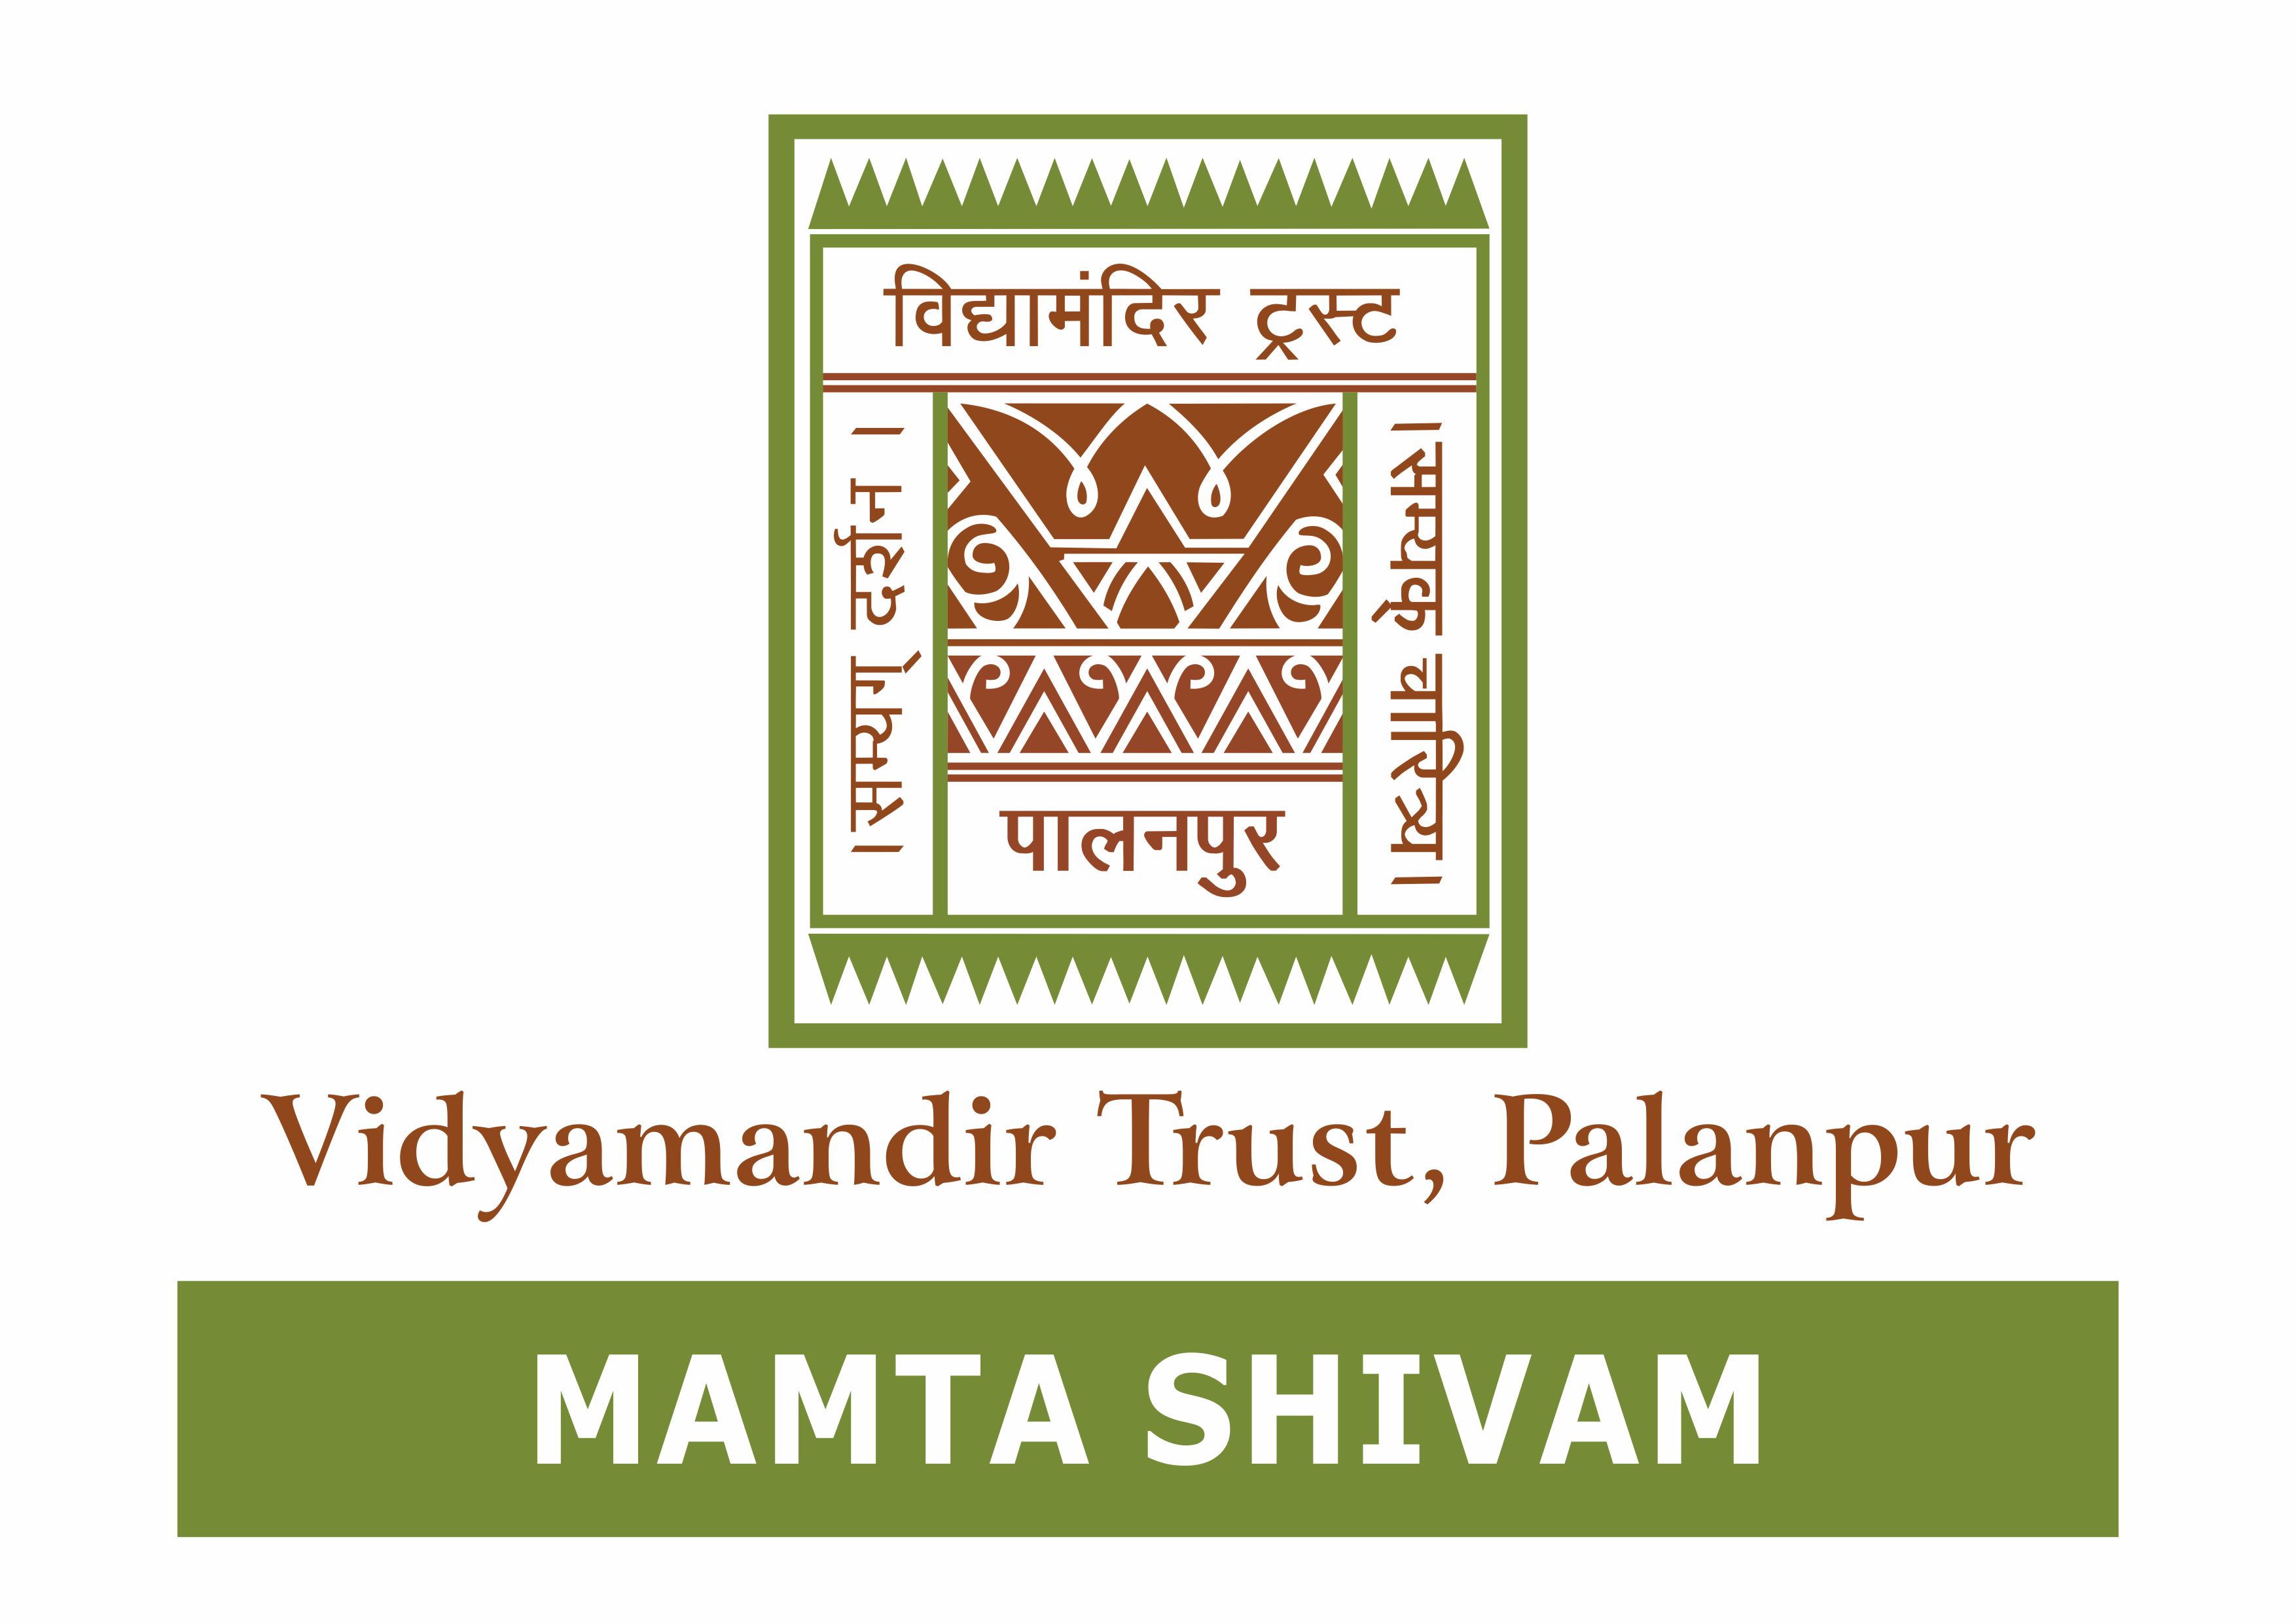 Mamta Shivam - Vidyamandir Trust, Palanpur